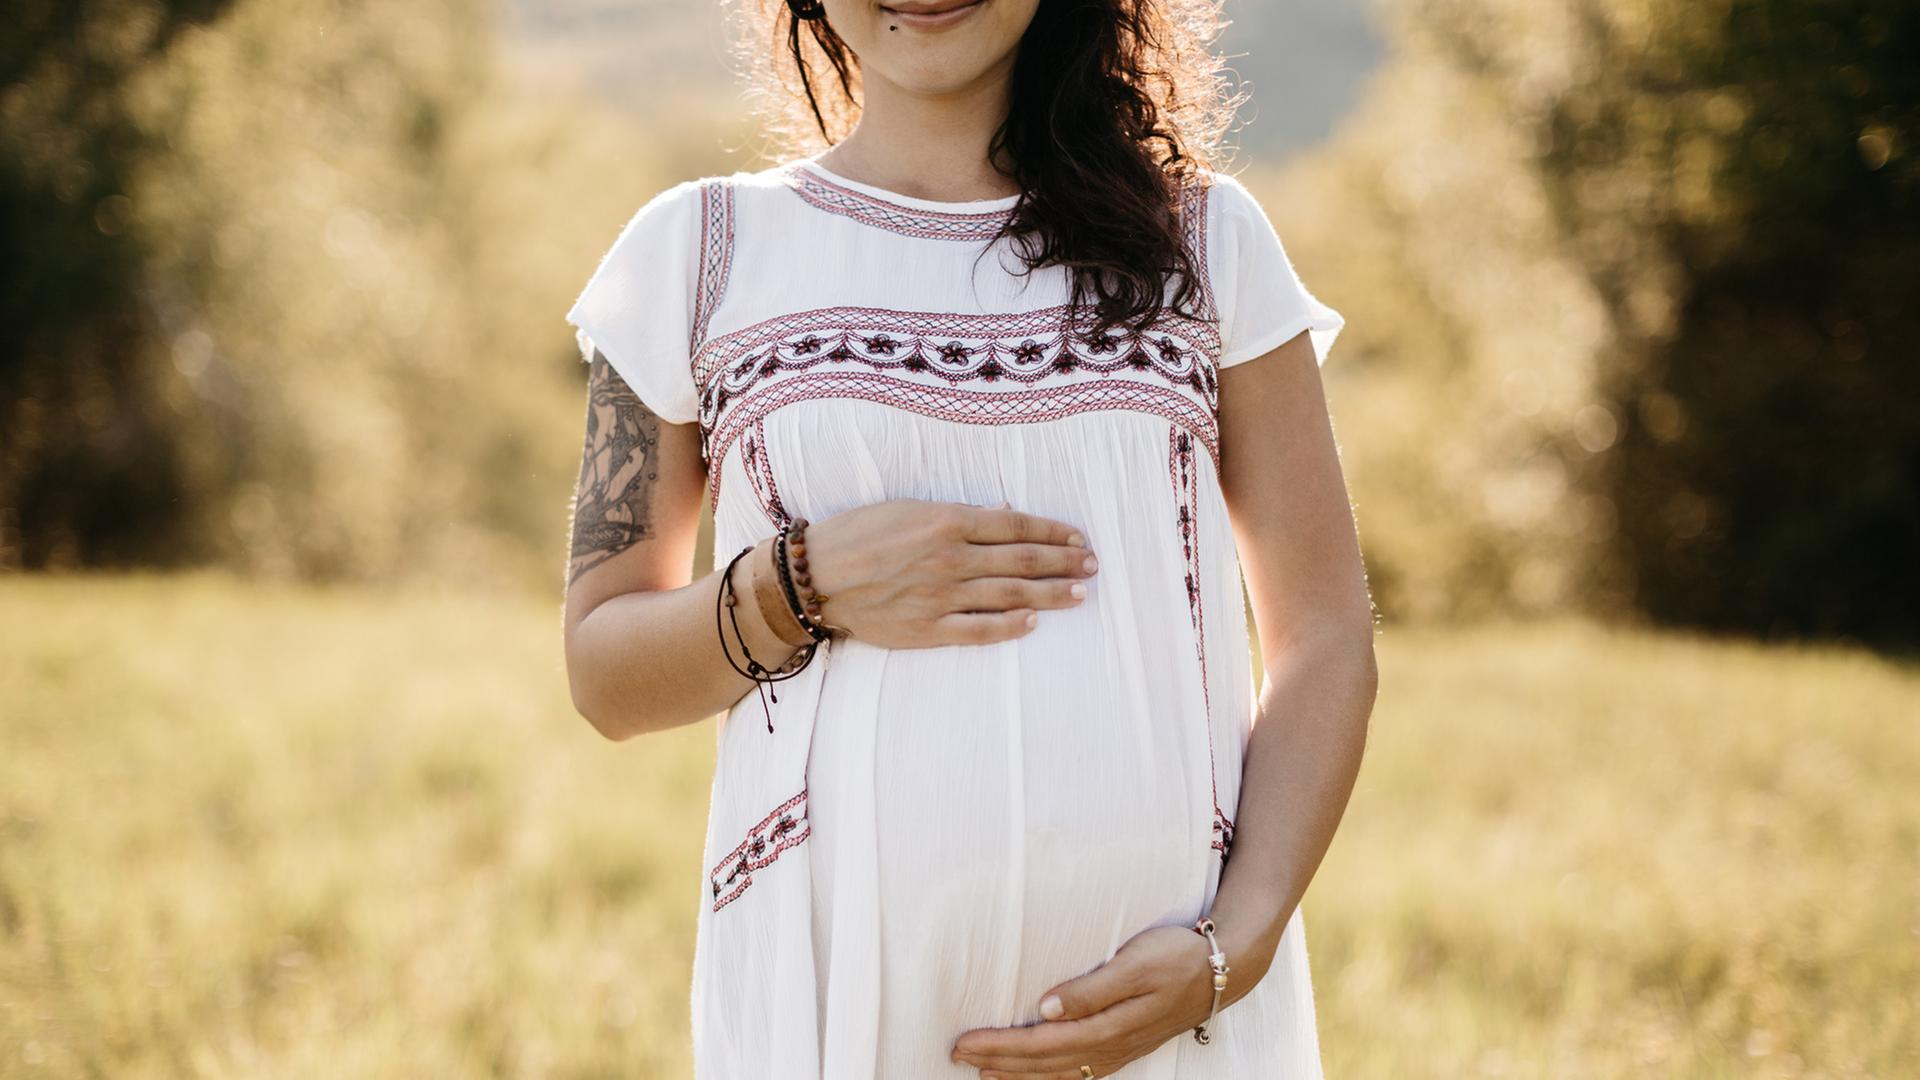 Das Hörspiel basiert auf einer wahren Begebenheit. 2014 wurden sieben Teenager in Bosnien und Herzegowina "kollektiv" schwanger. Zu sehen: Eine junge Frau (Gesicht erst ab den Lippen zu sehen) in einem weißen Kleid hält ihre Hände über den schwangeren Bauch. 